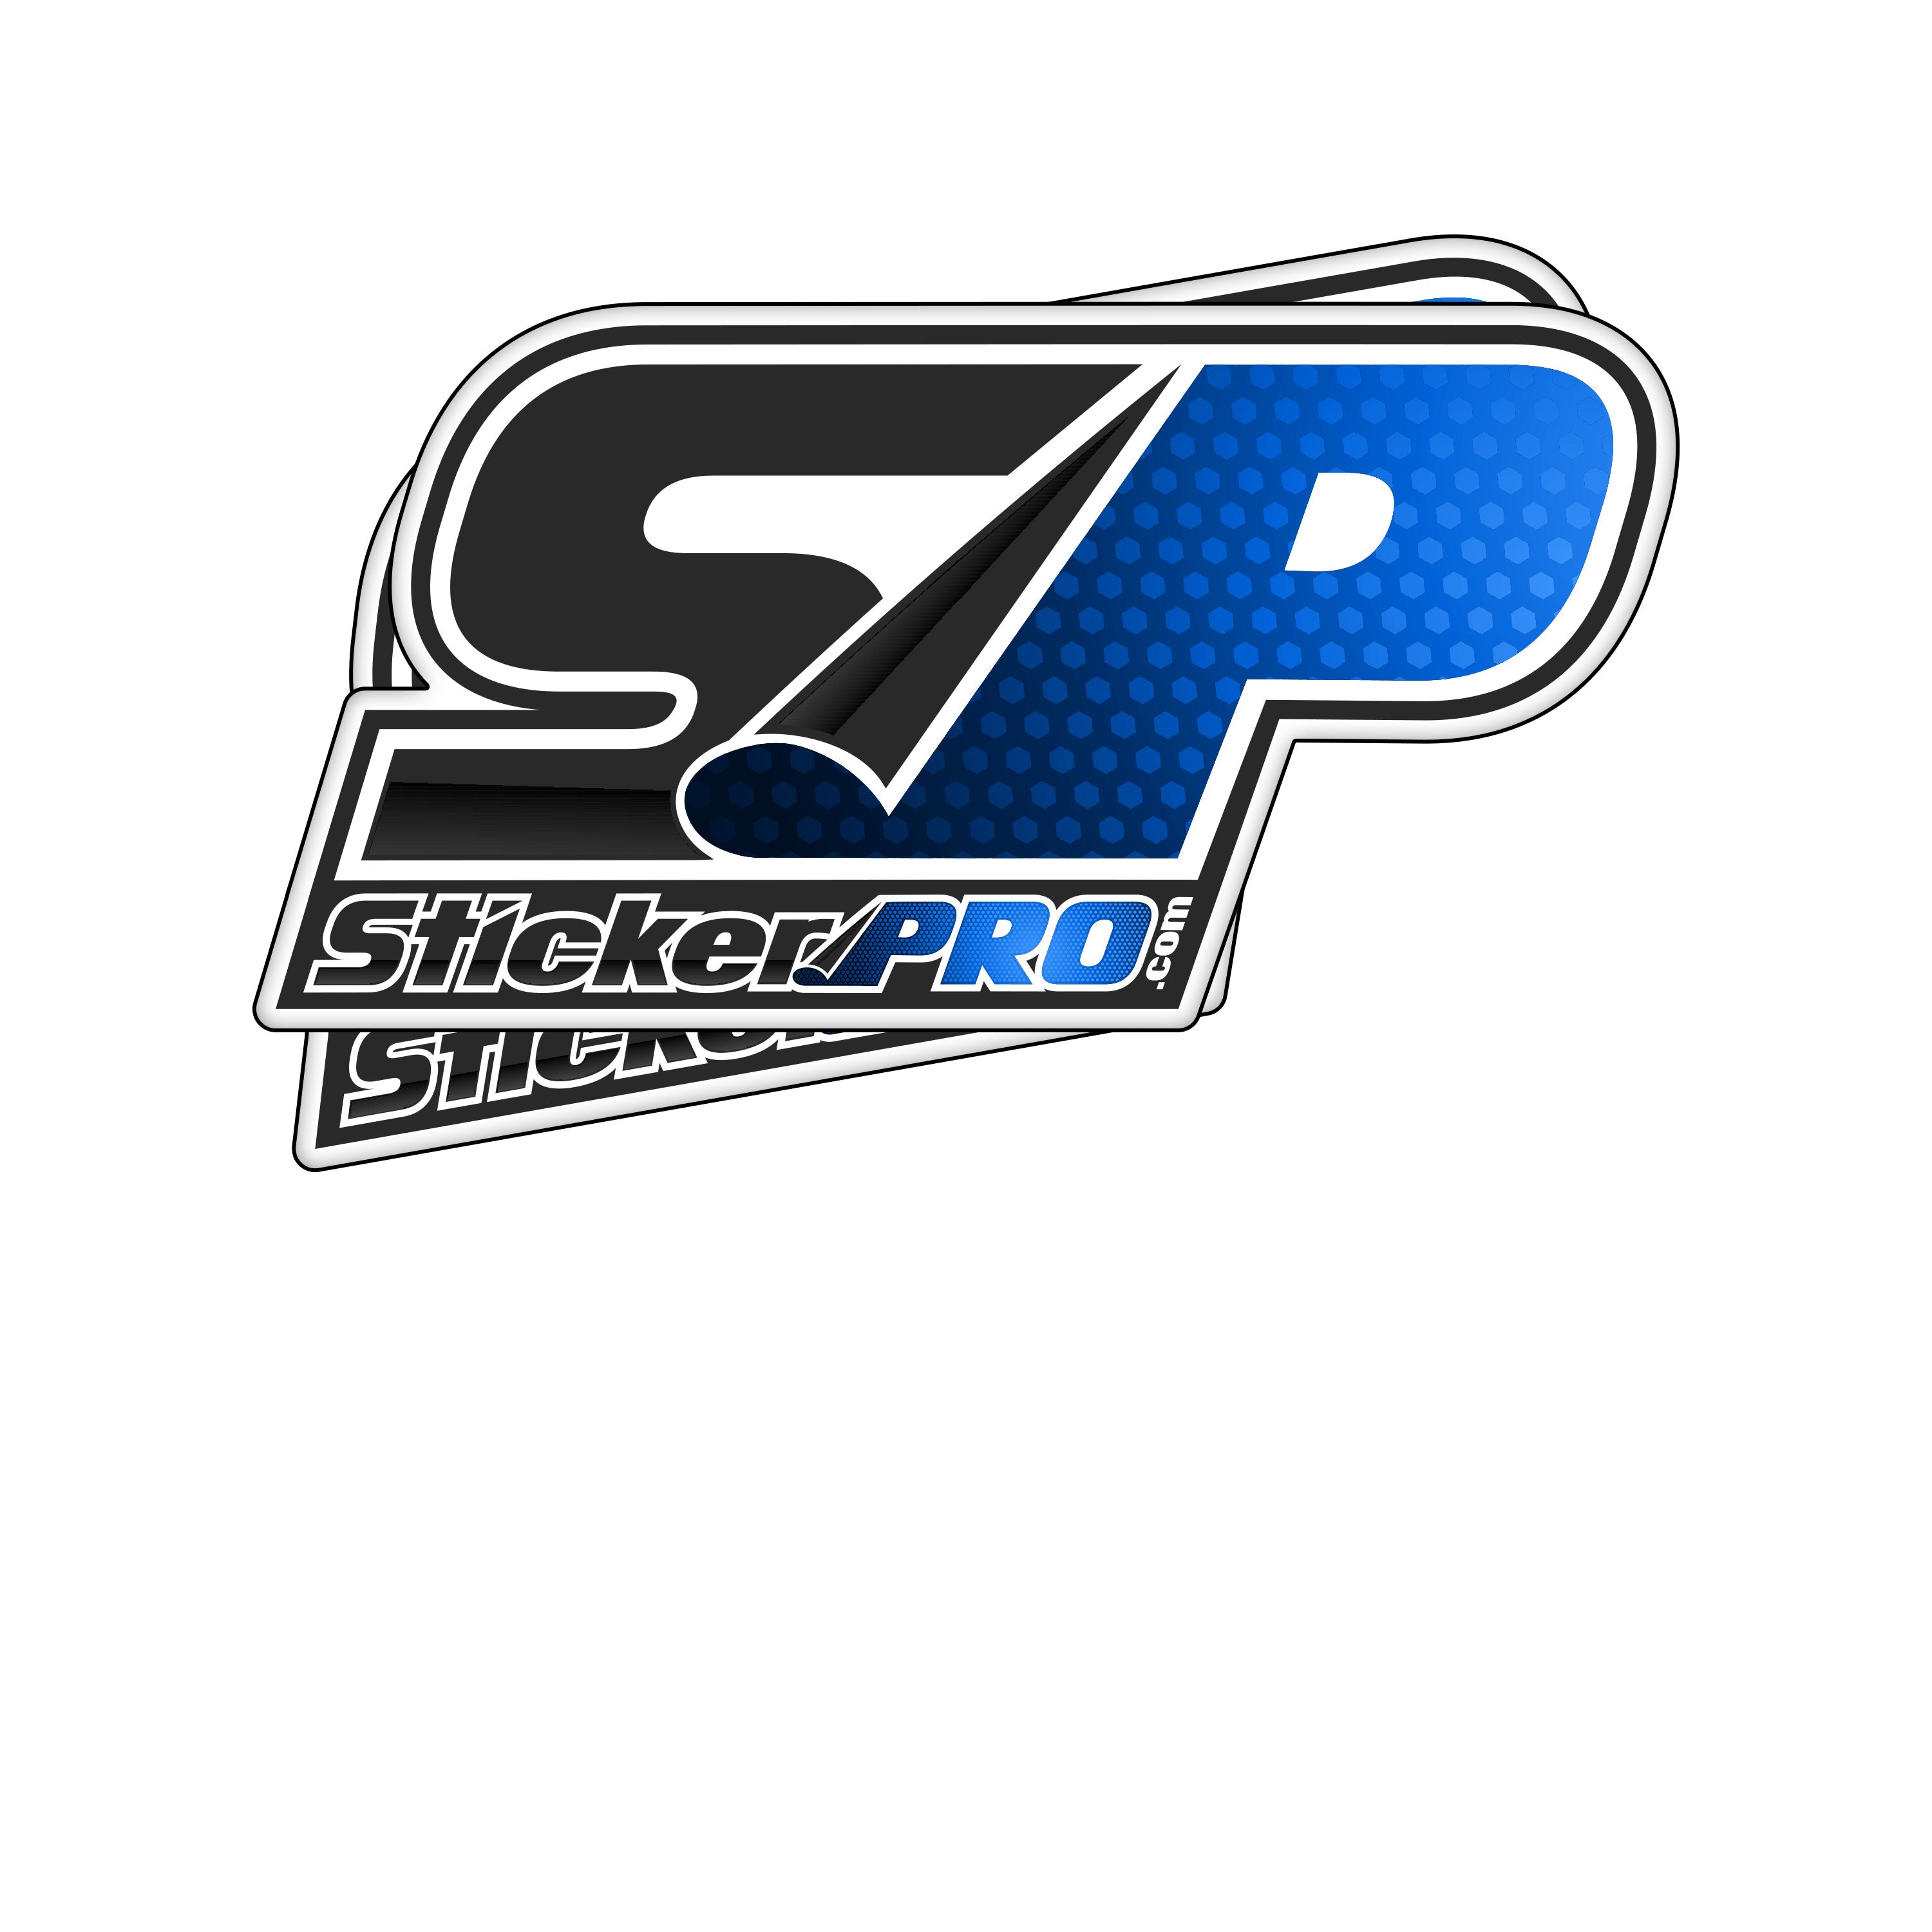 Your Sticker Pro - Sticker Pro USA - Die Cut Stickers - StickerPRO.com